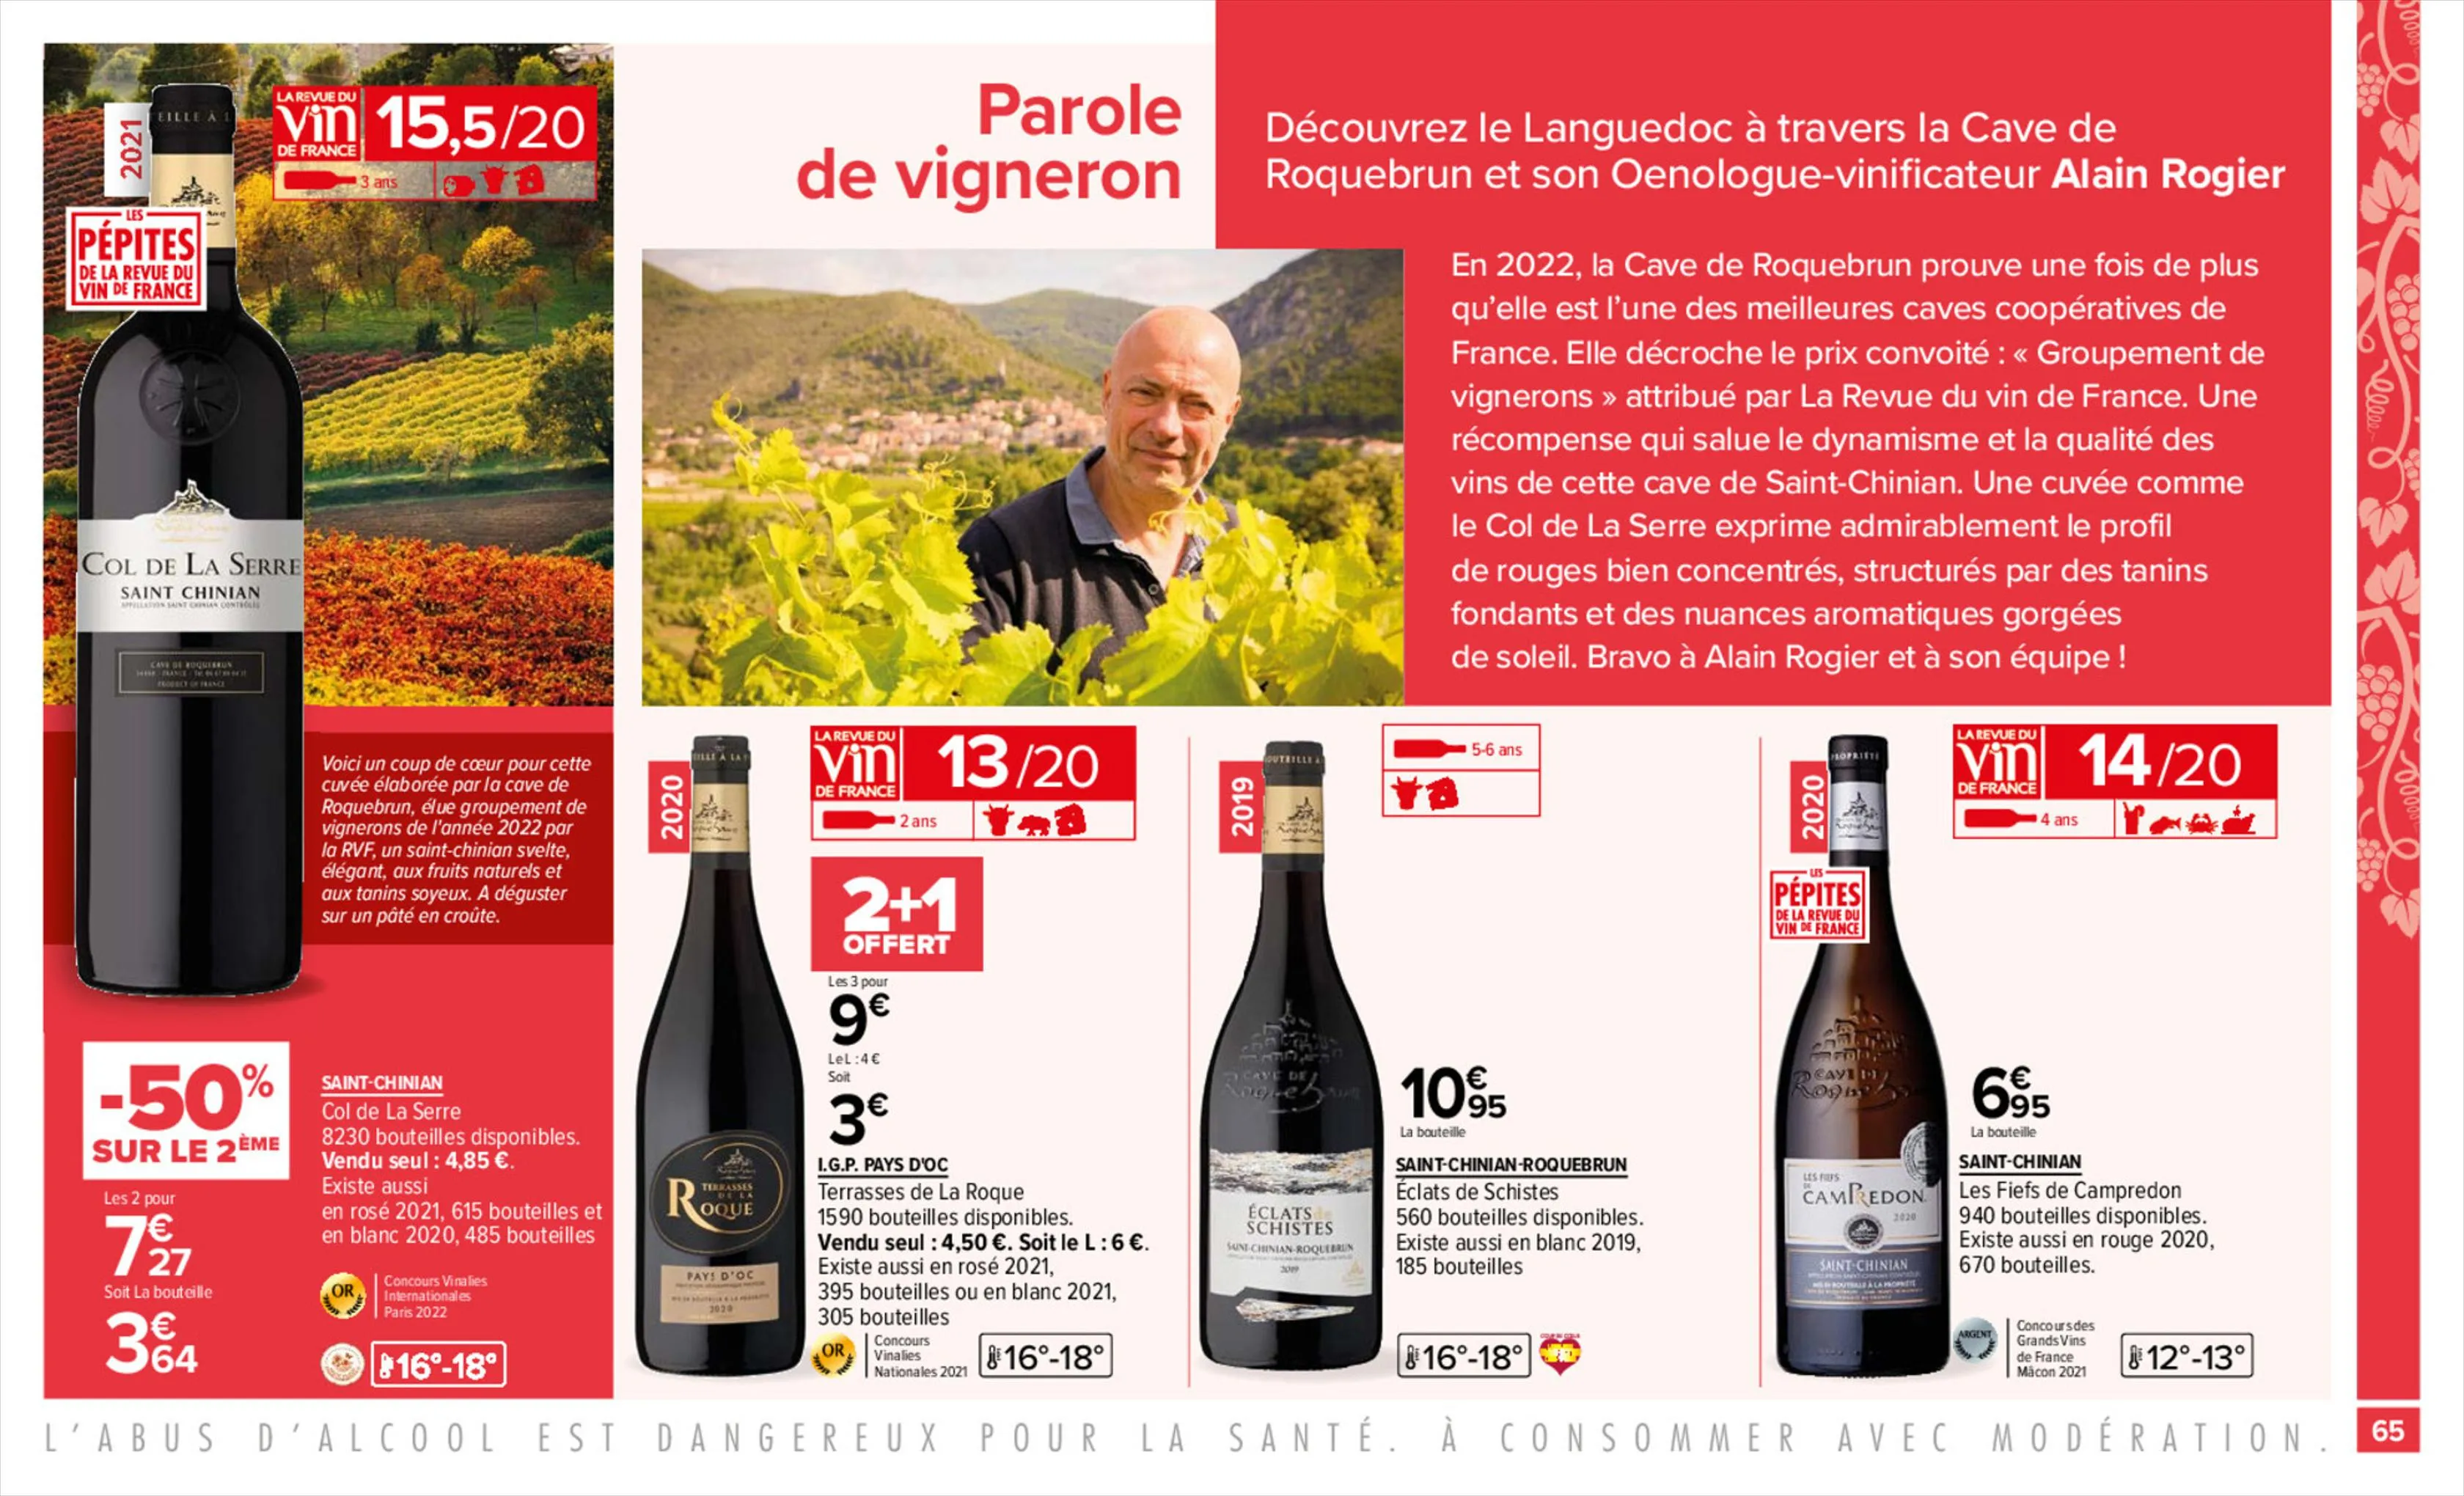 Catalogue Foire aux vins, page 00065